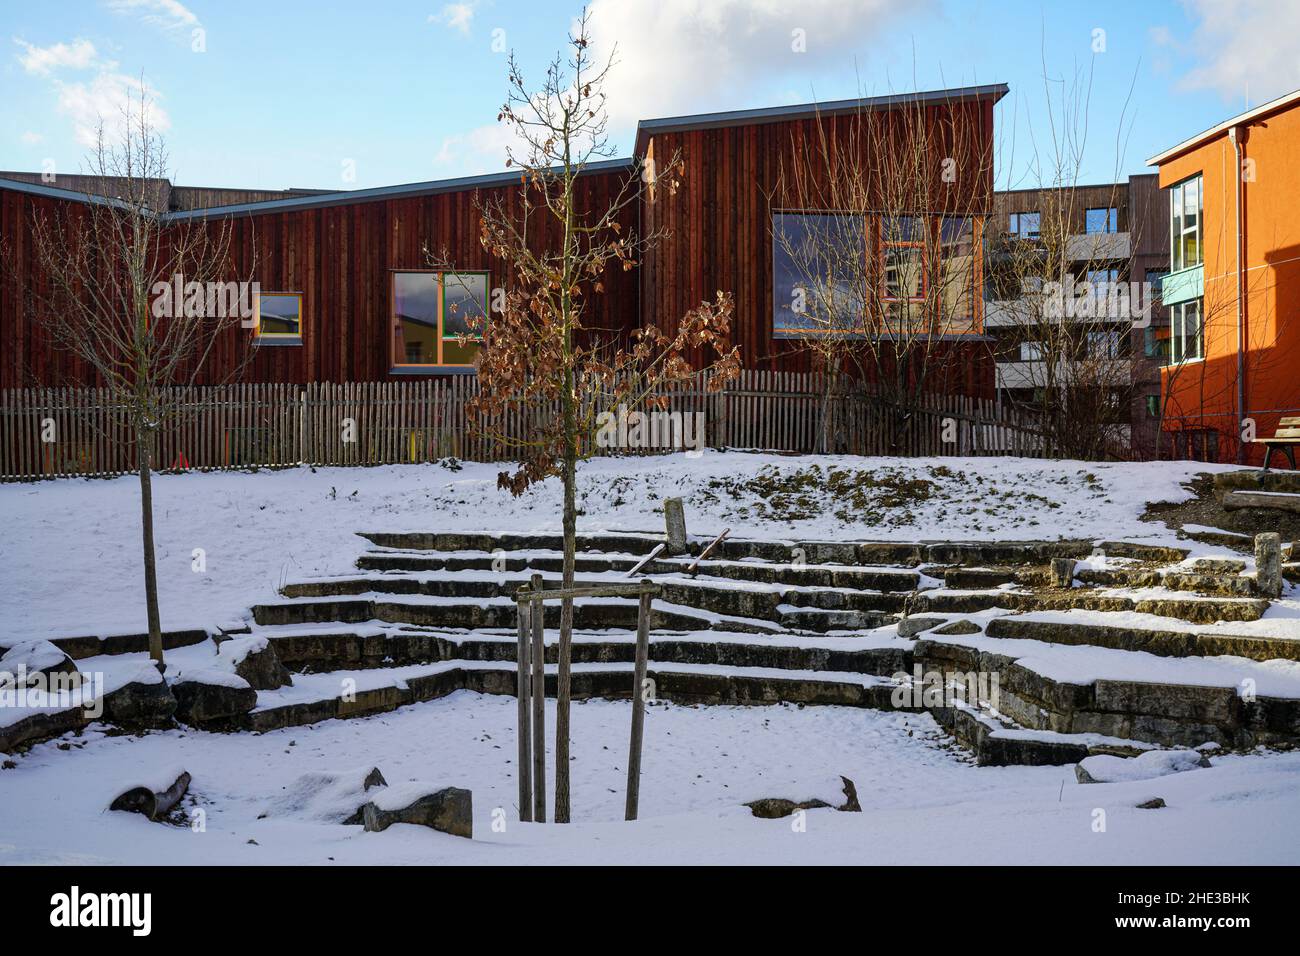 Piazzale con posti a sedere in pietra ricoperti di neve in un edificio scolastico del Campus Rudolf Steiner Waldorf School di Monaco in inverno. Foto Stock